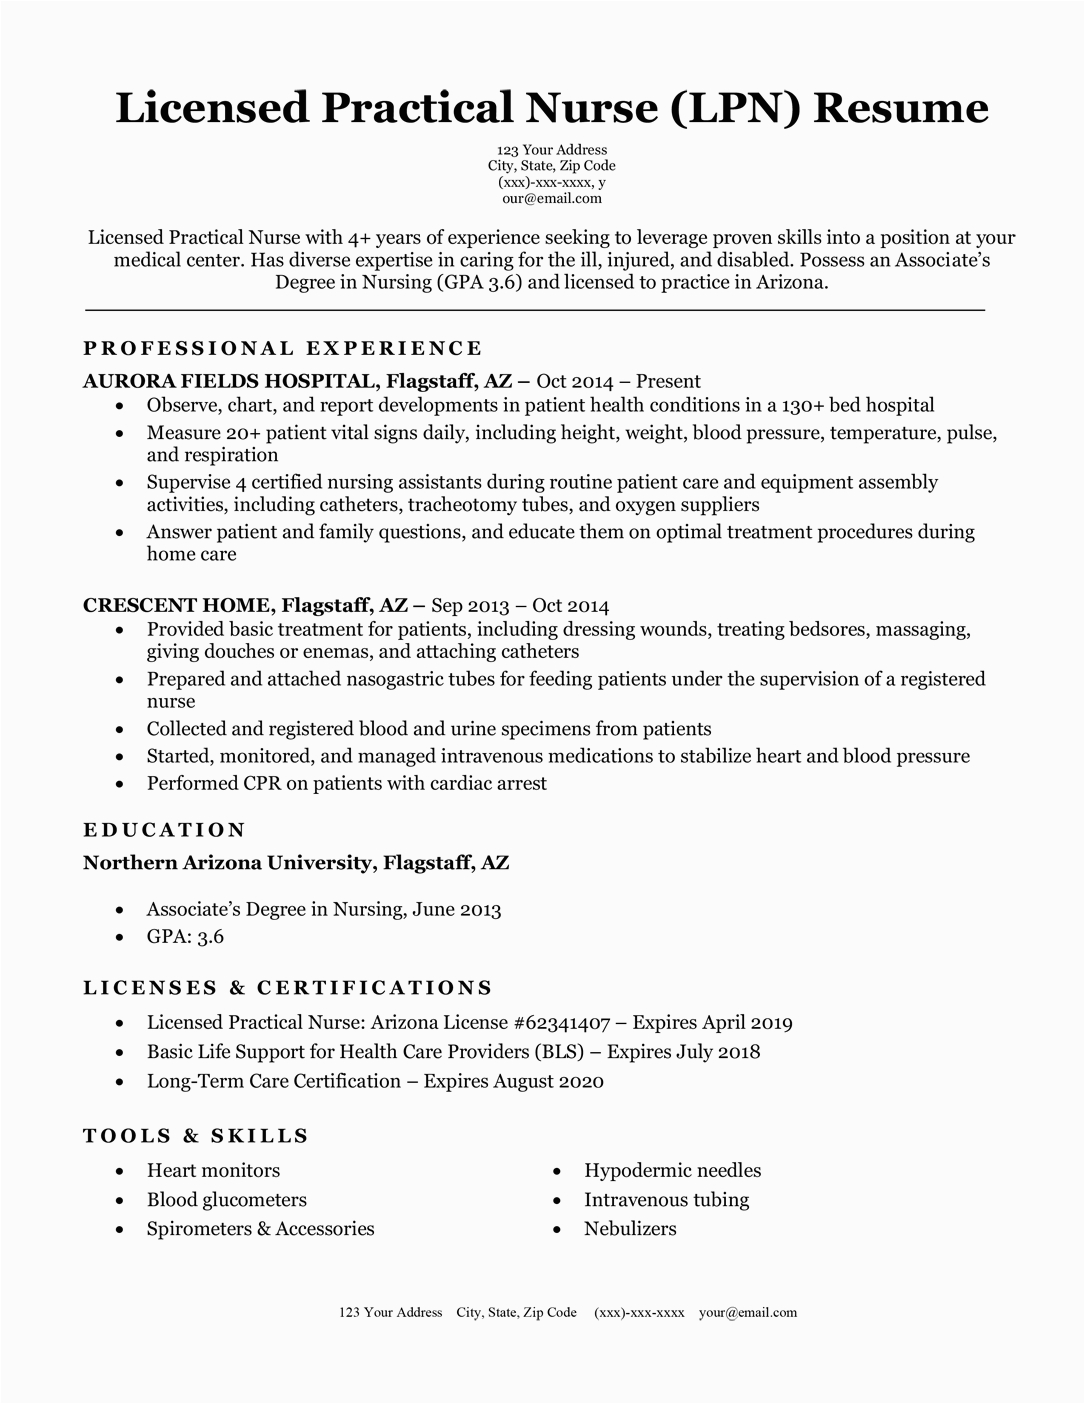 Licensed Practical Nurse Lpn Resume Sample Licensed Practical Nurse Lpn Resume Sample & Writing